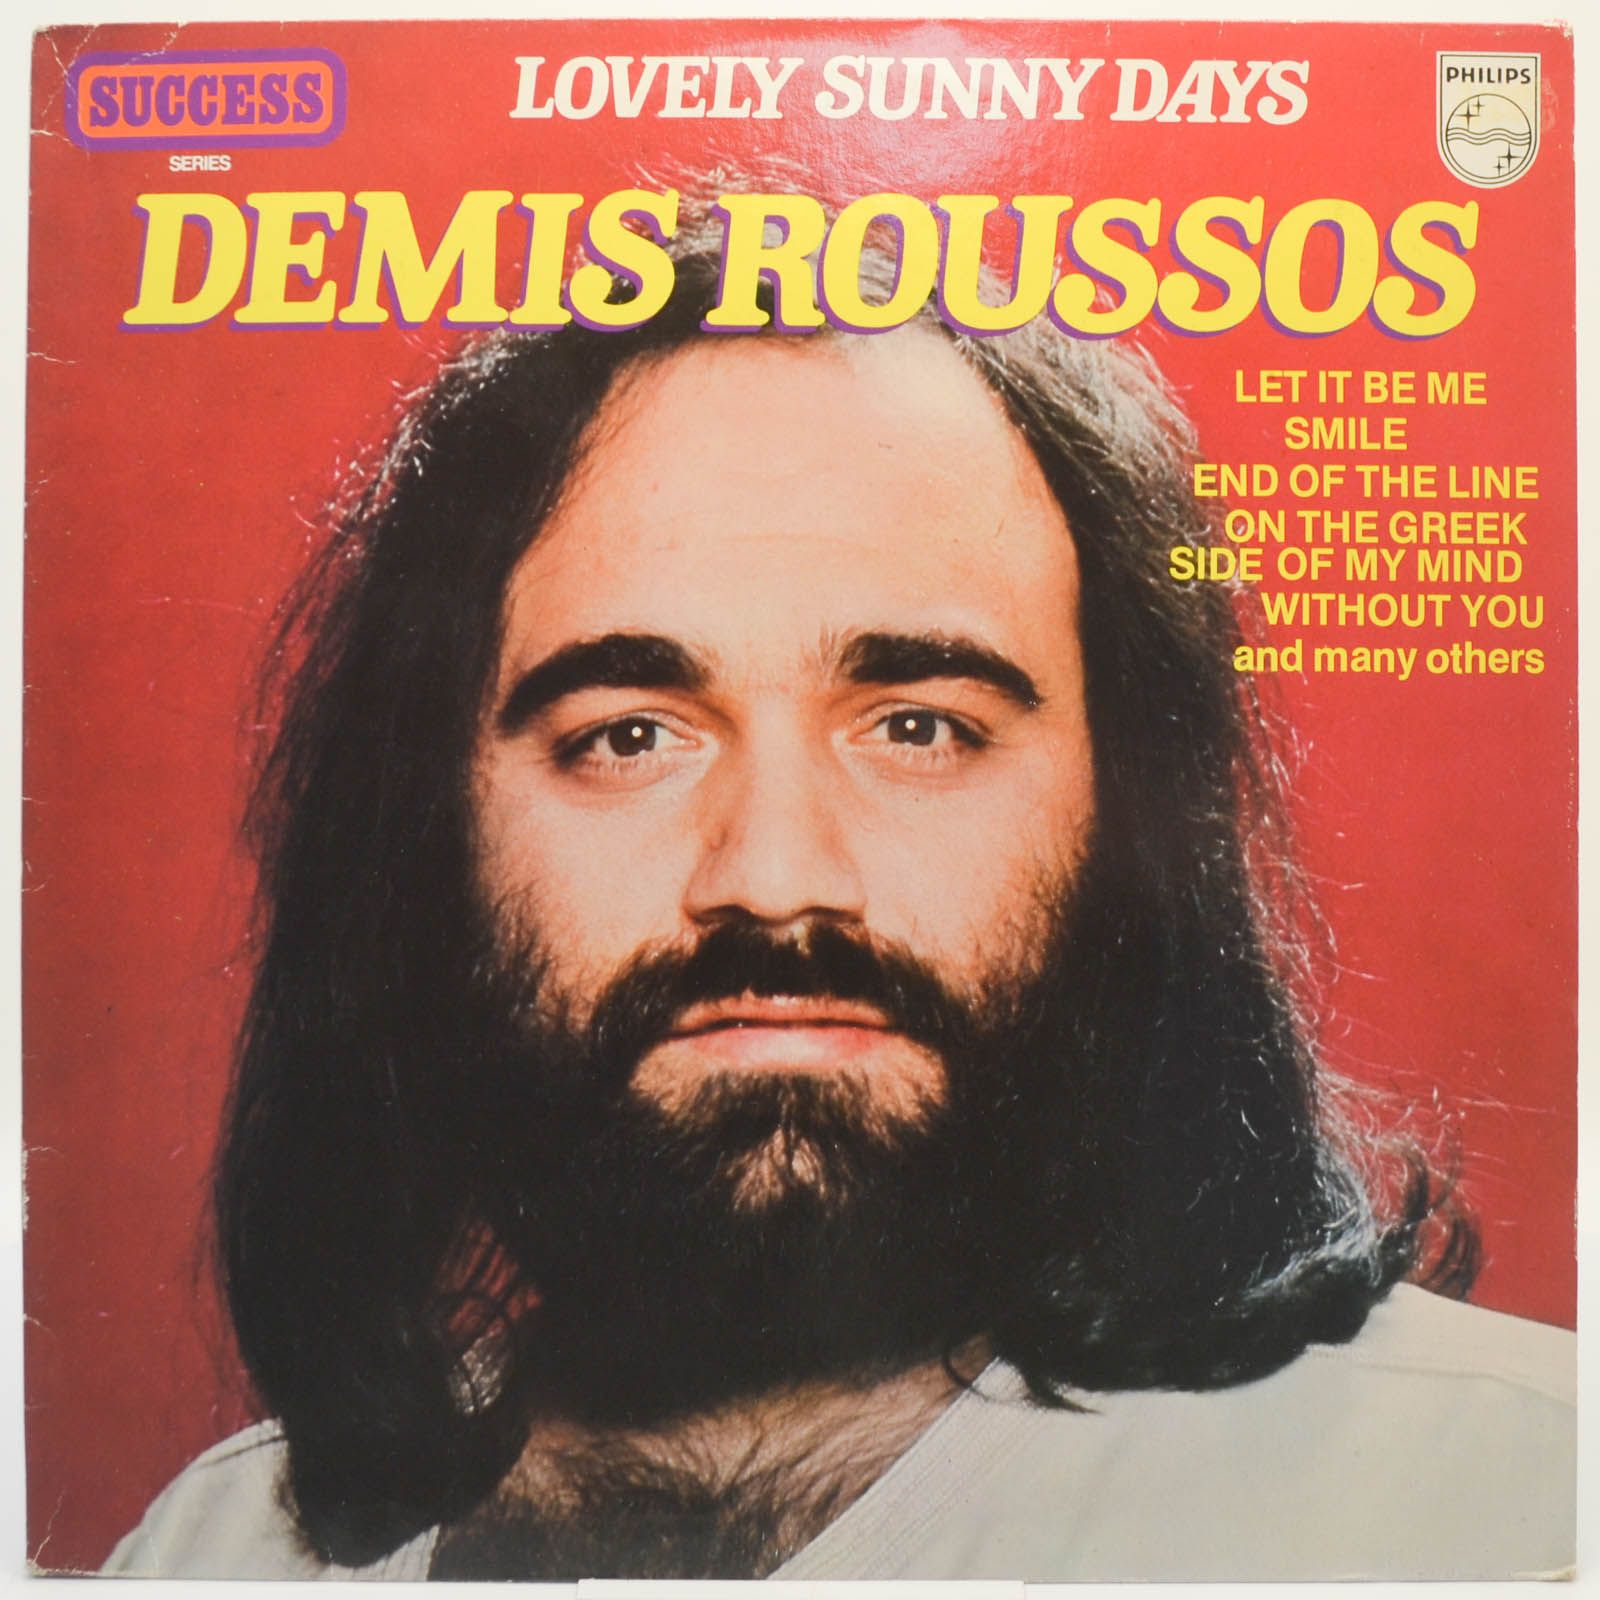 Demis Roussos — Lovely Sunny Days, 1975